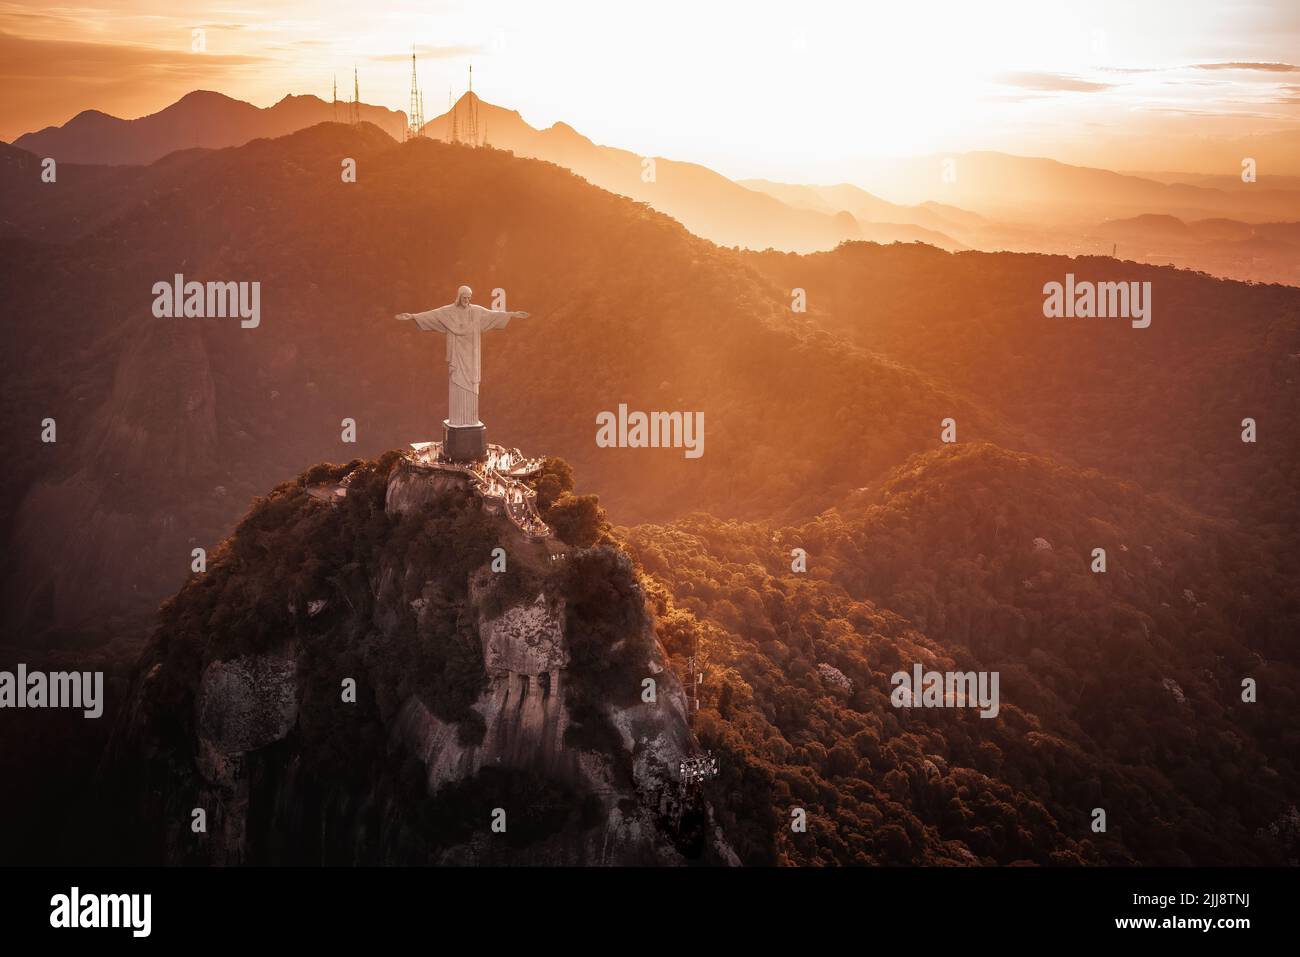 Statue du Christ Rédempteur au sommet de la montagne du Corcovado au coucher du soleil - Rio de Janeiro, Brésil Banque D'Images